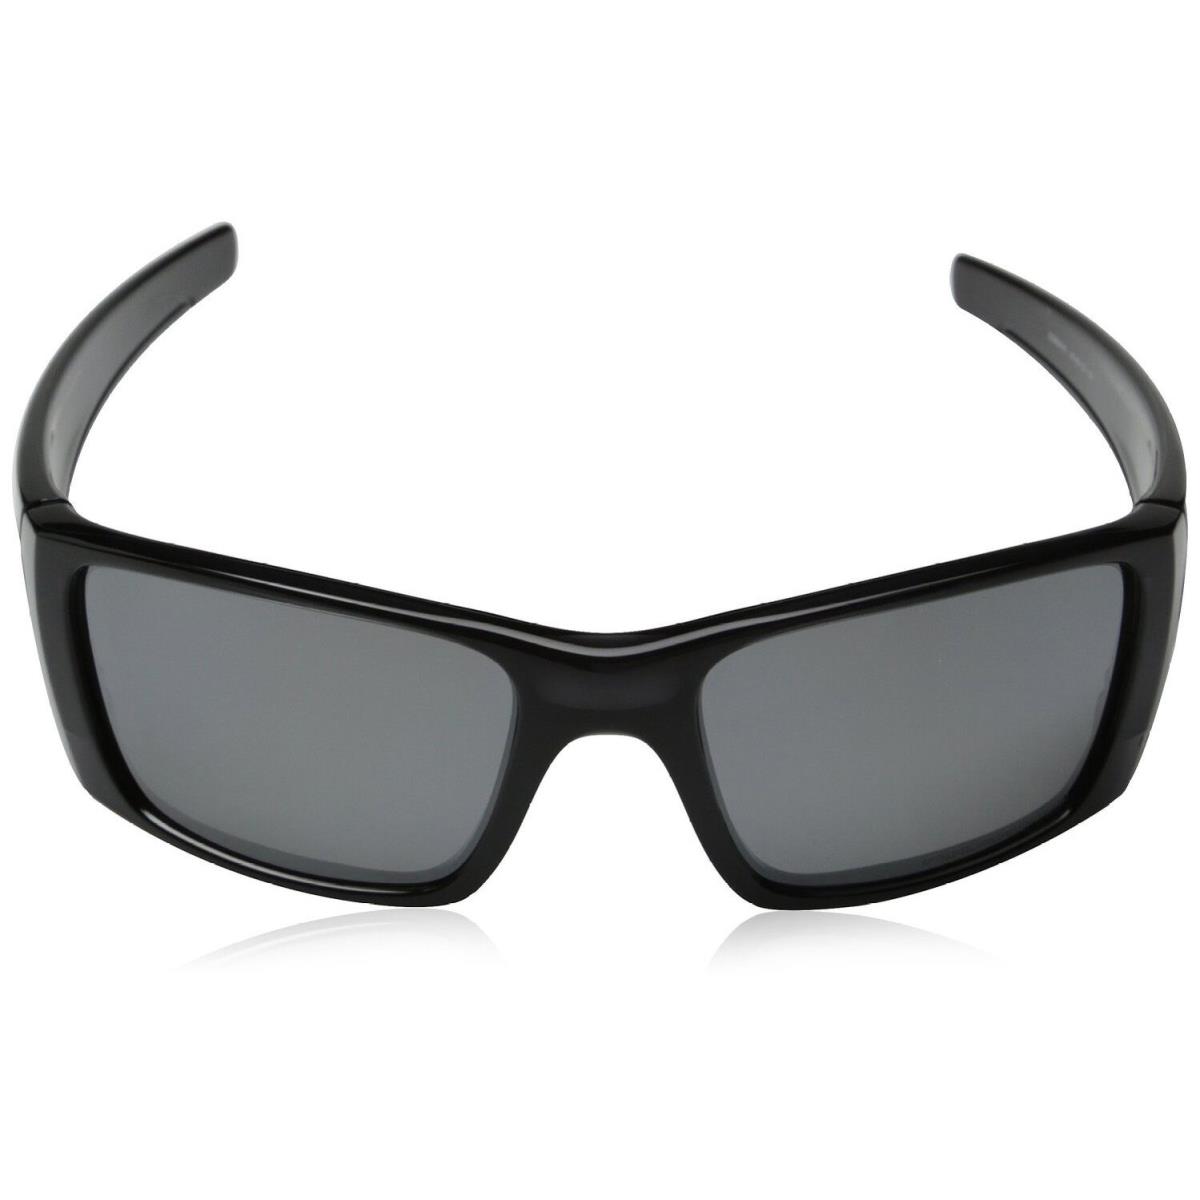 Oakley Fuel Cell Polarized Iridium Sunglasses Polished Black Ink Frame Lenses